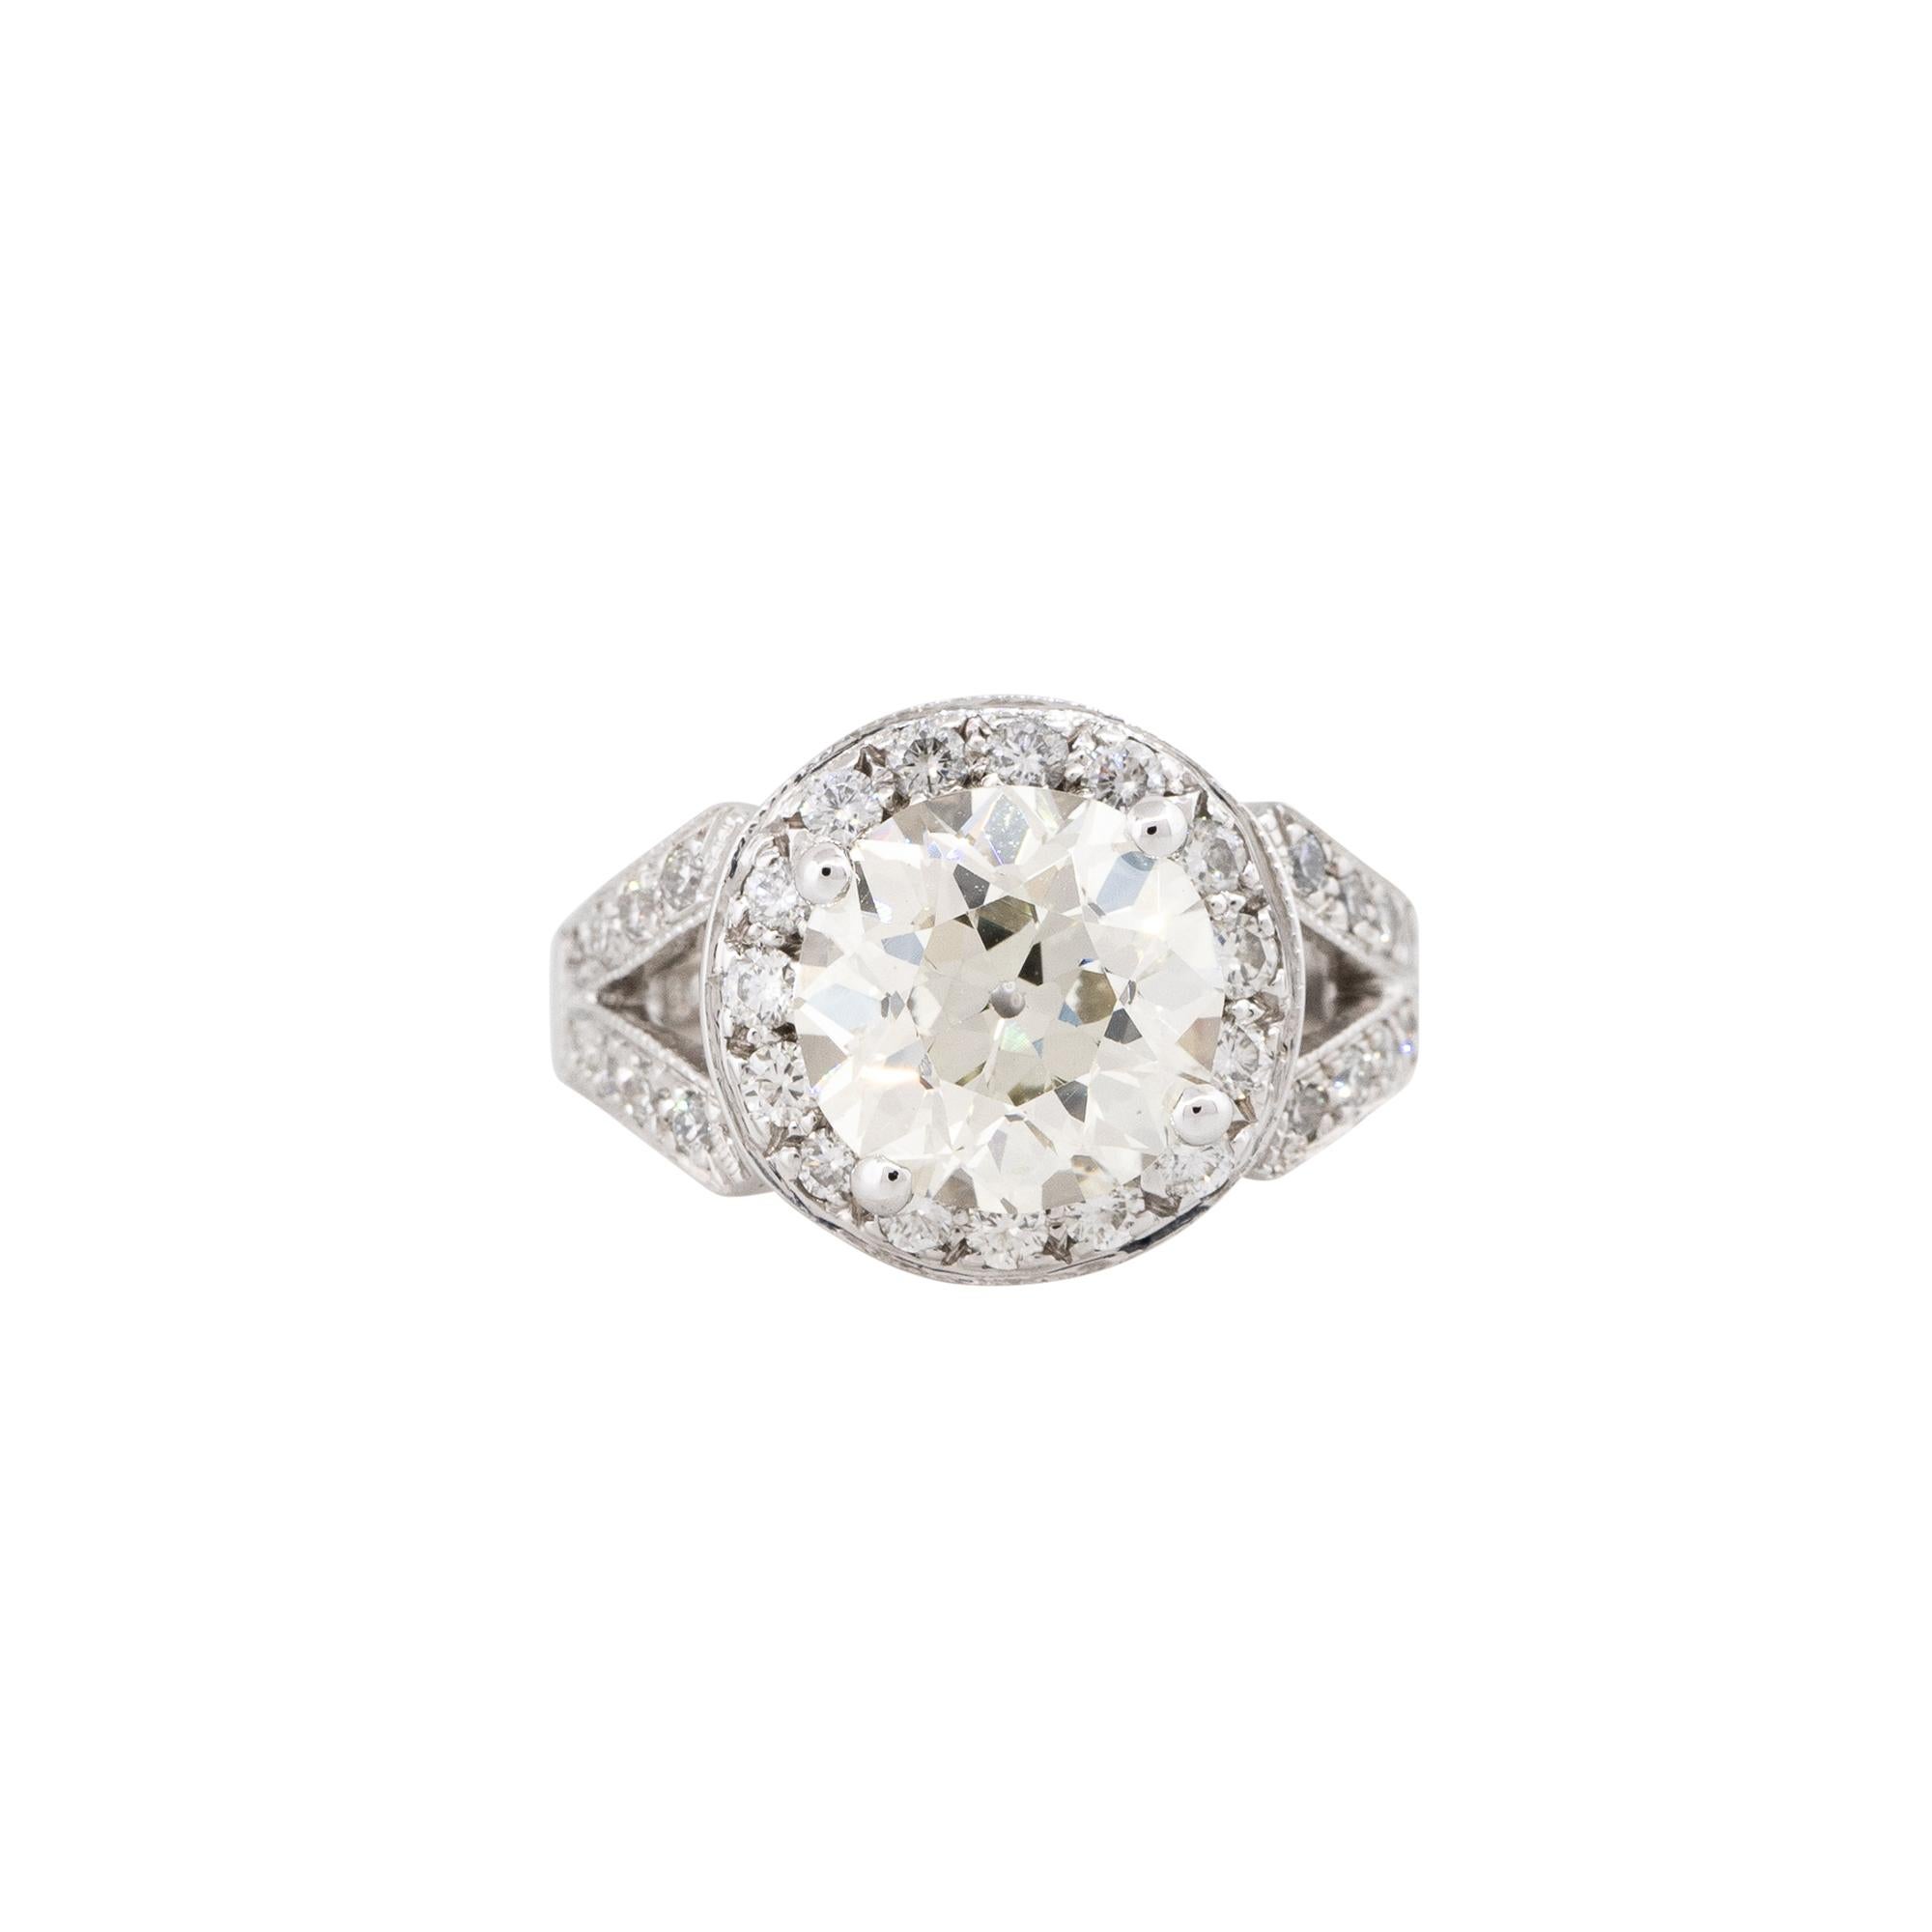 GIA zertifiziert 18k Weißgold 3,38ctw kreisförmig Brillant Diamant Halo Verlobungsring

Dieser GIA-zertifizierte 3,38-karätige Diamant-Halo-Verlobungsring ist zeitlos und elegant. Das Herzstück des Rings ist ein runder Diamant im Brillantschliff mit